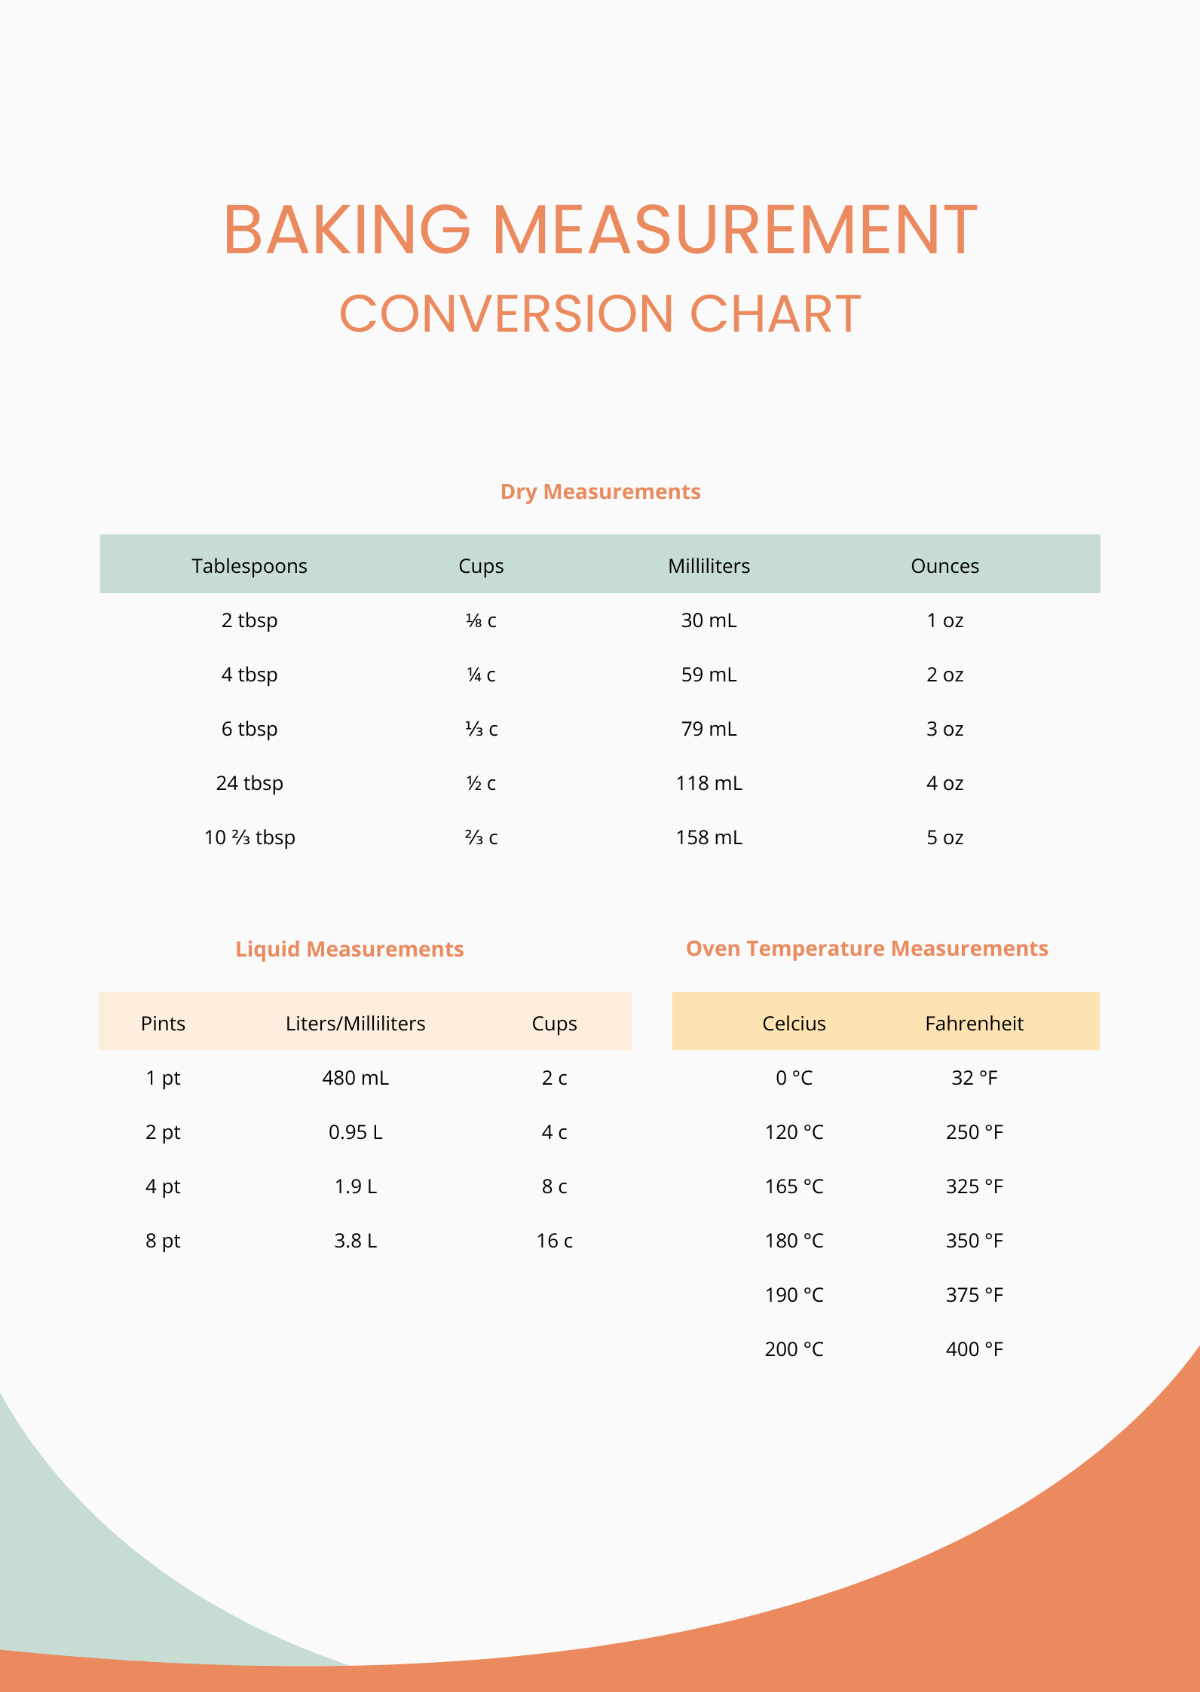 Baking Measurement Conversion Chart Template - Edit Online & Download ...